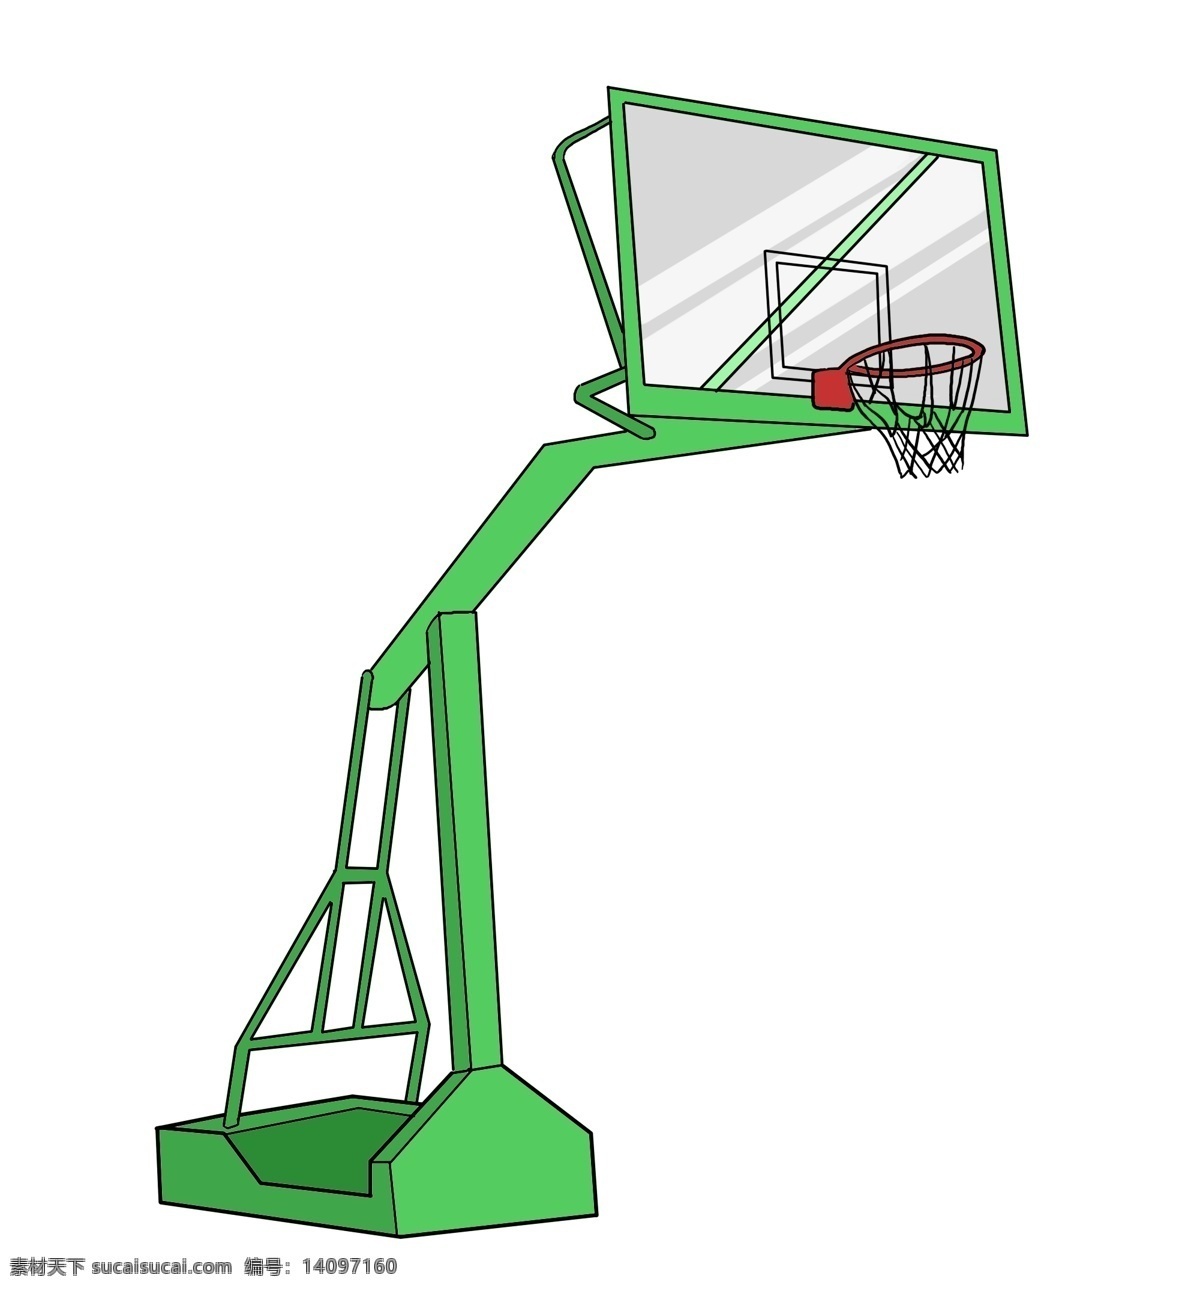 篮球 框子 卡通 插画 绿色的篮球框 卡通插画 框子插画 篮球框子 打篮球 体育运动 高高的篮球框